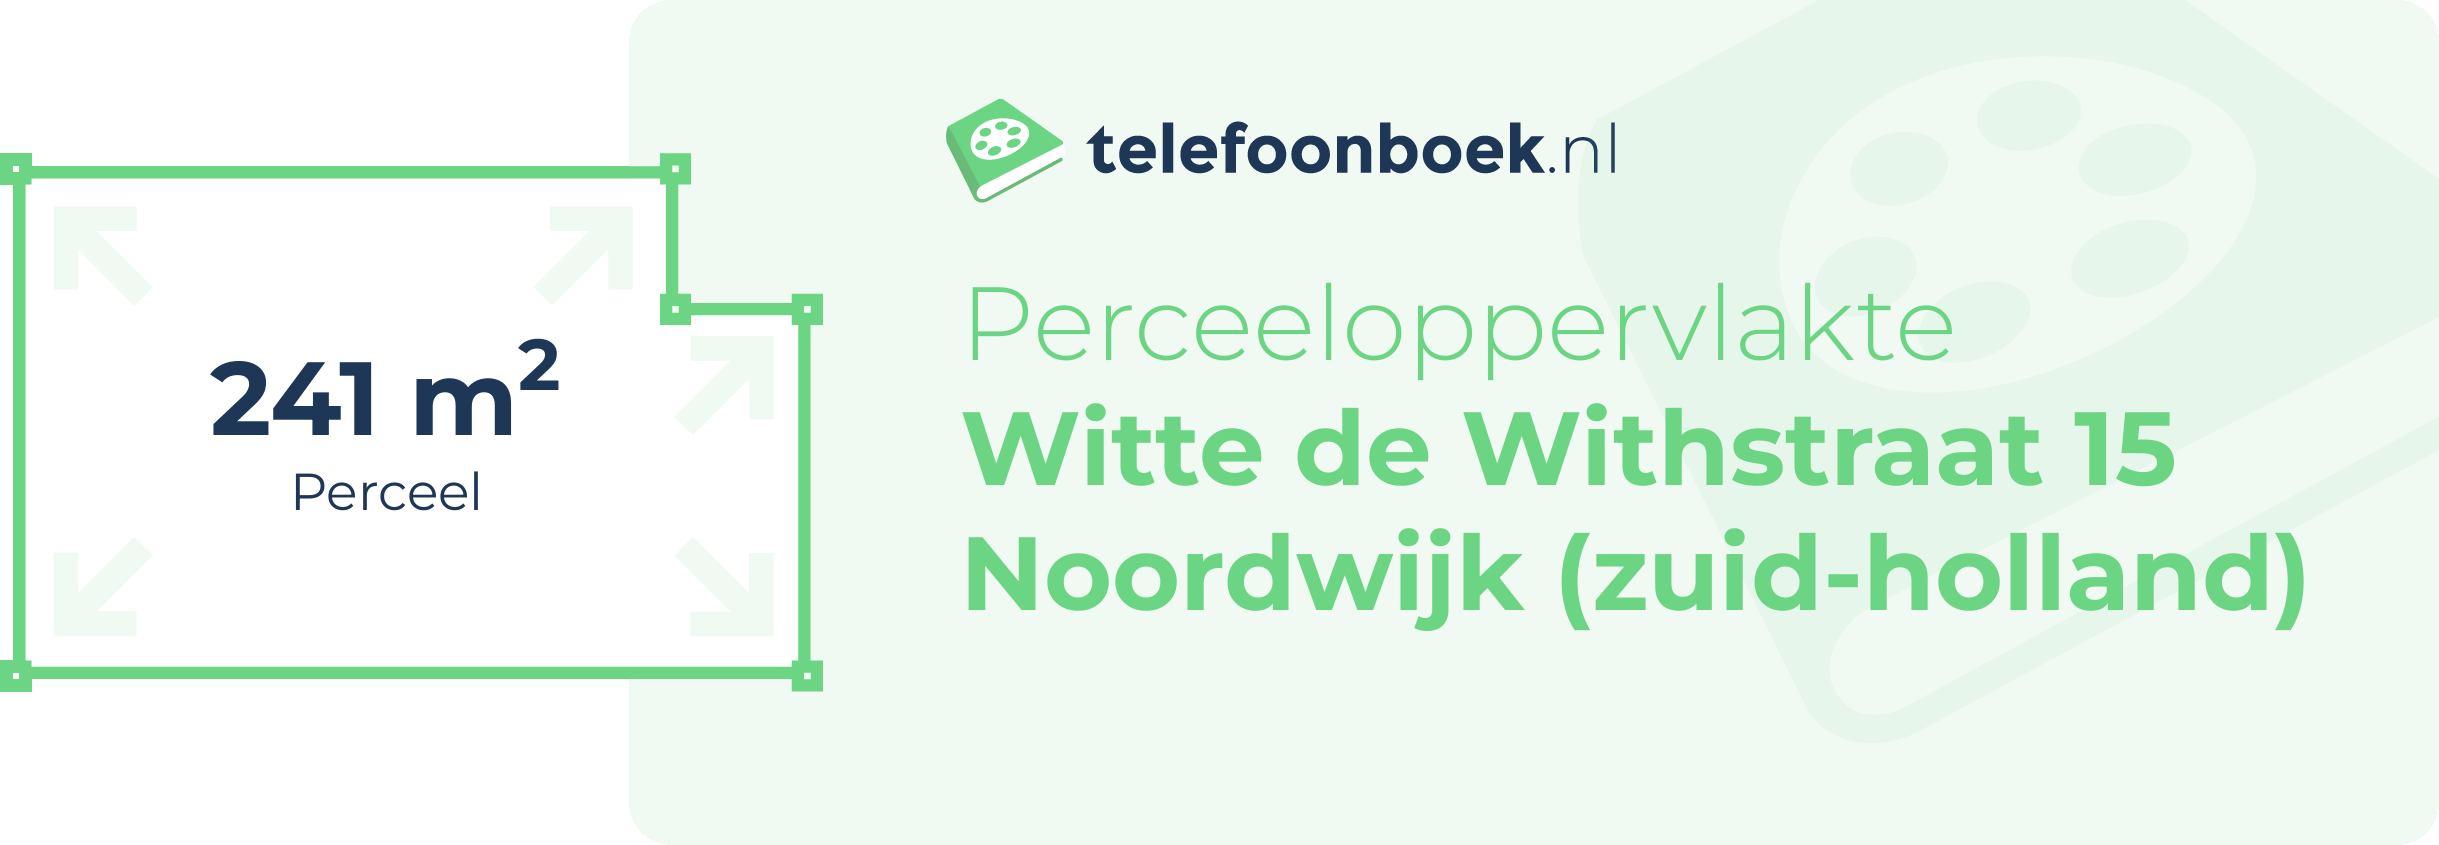 Perceeloppervlakte Witte De Withstraat 15 Noordwijk (Zuid-Holland)